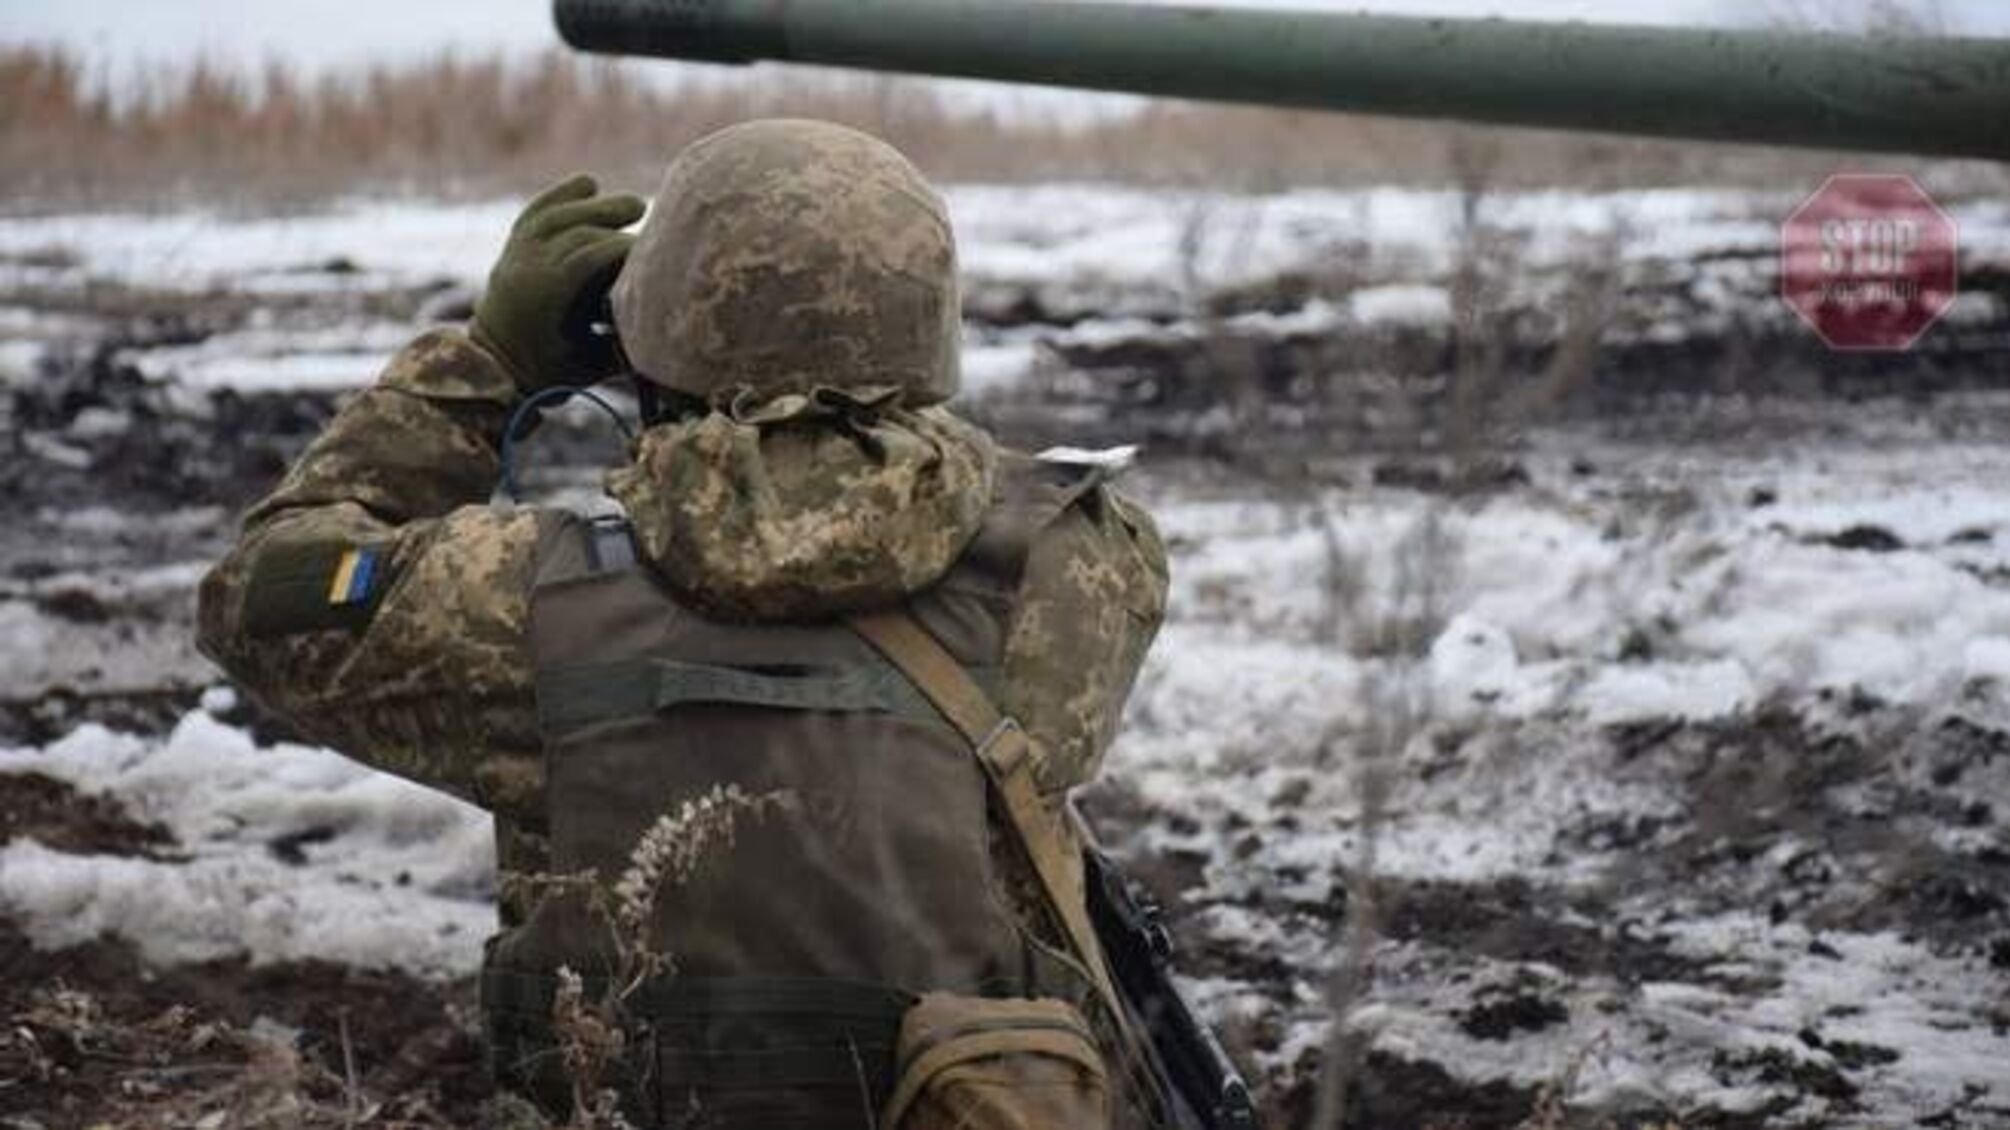 ООС: Оккупанты трижды нарушили перемирие и стреляли из гранатометов - Вооруженные силы Украины ответили